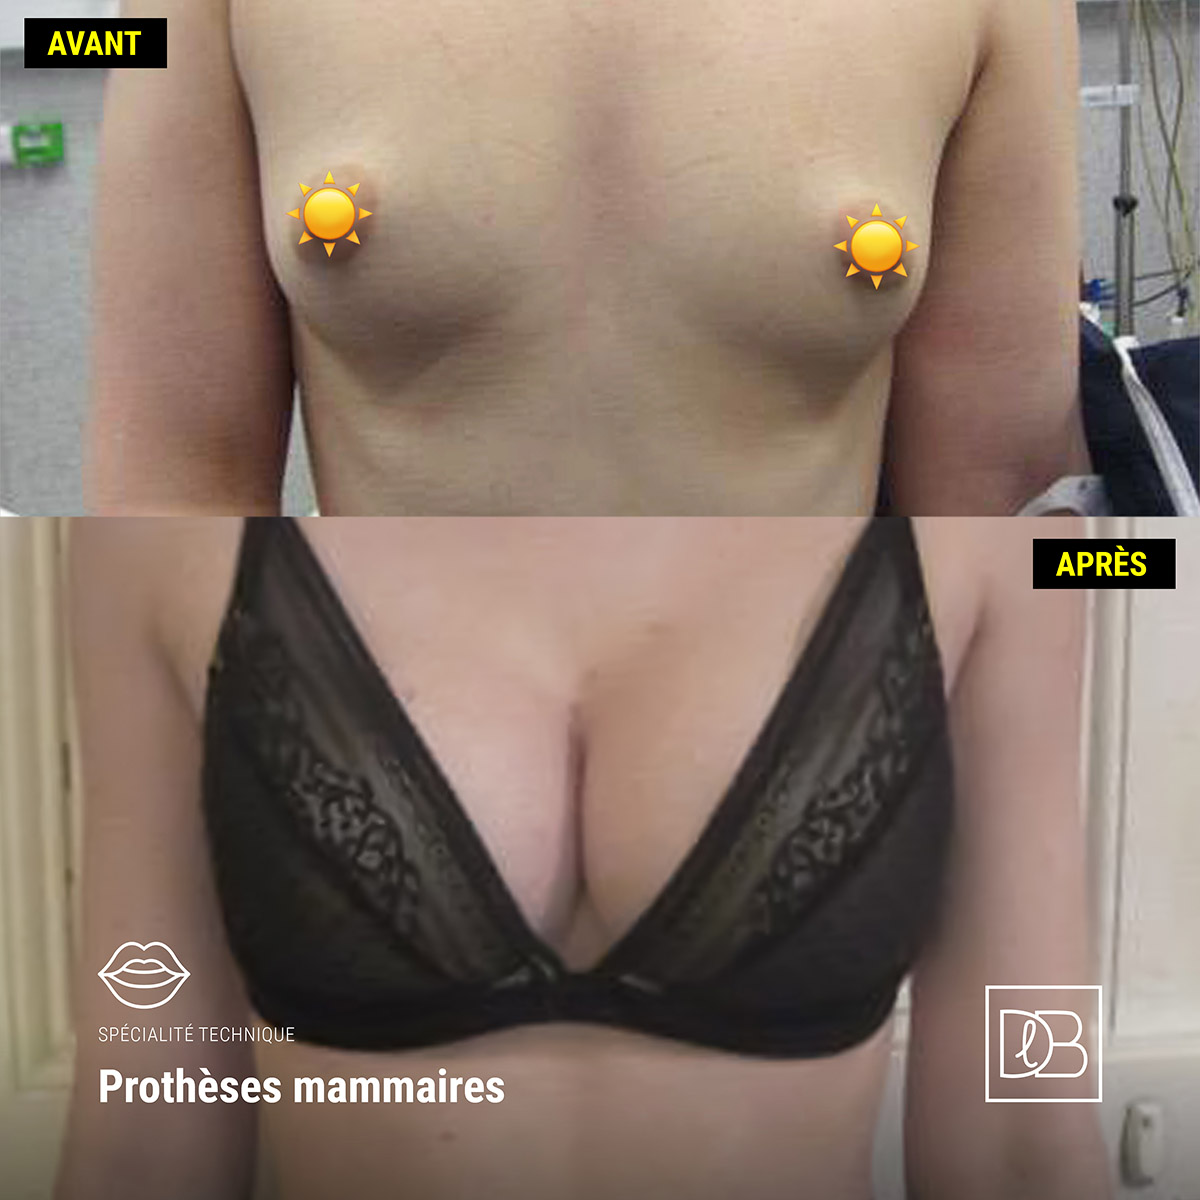 Avant Après un implant de prothèses mammaires (Dr Benouaiche, Paris)